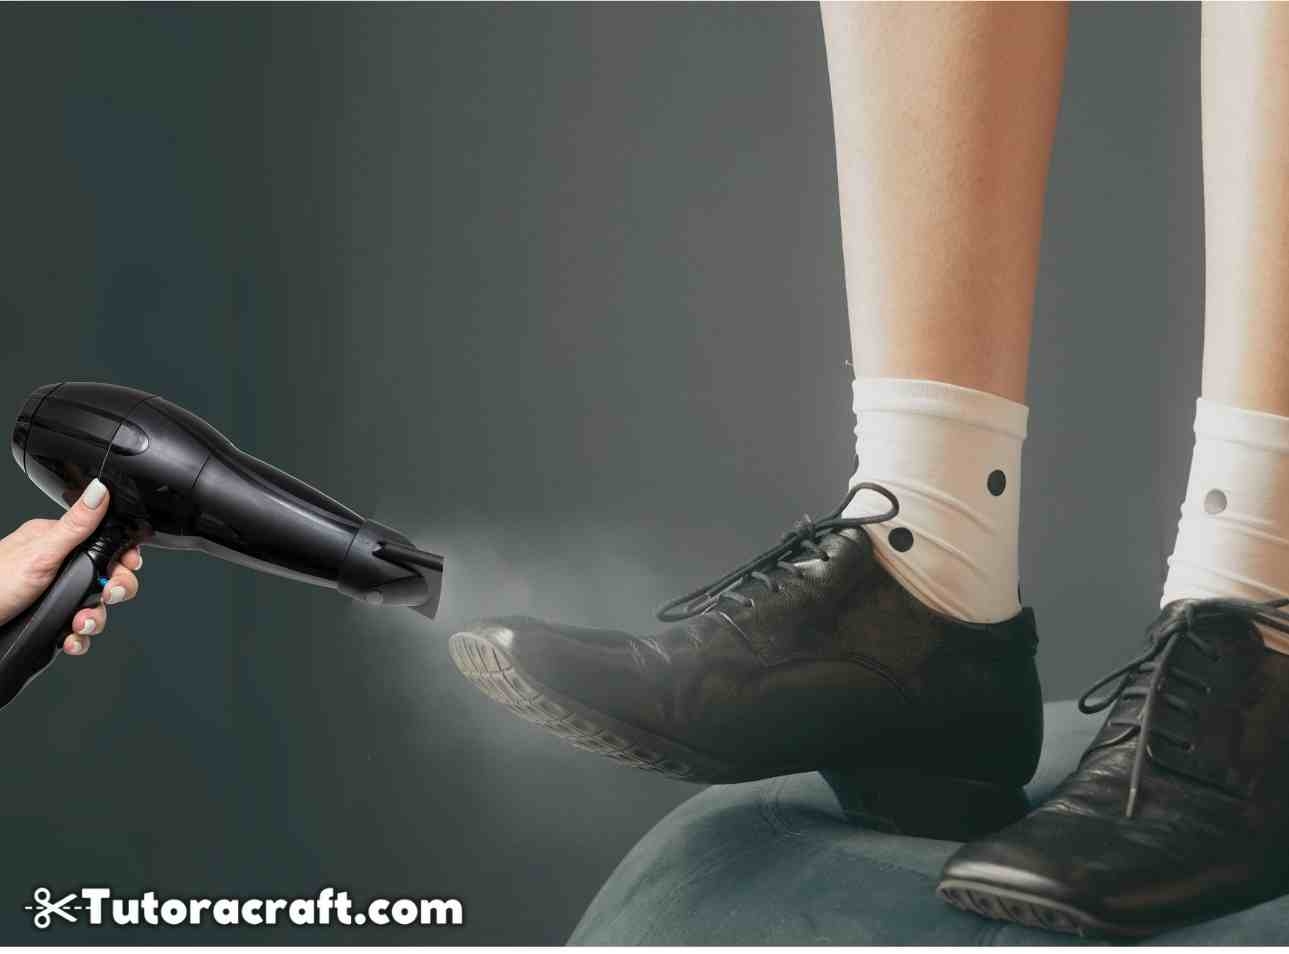 Use um secador para amaciar calçados apertados ou desconfortáveis